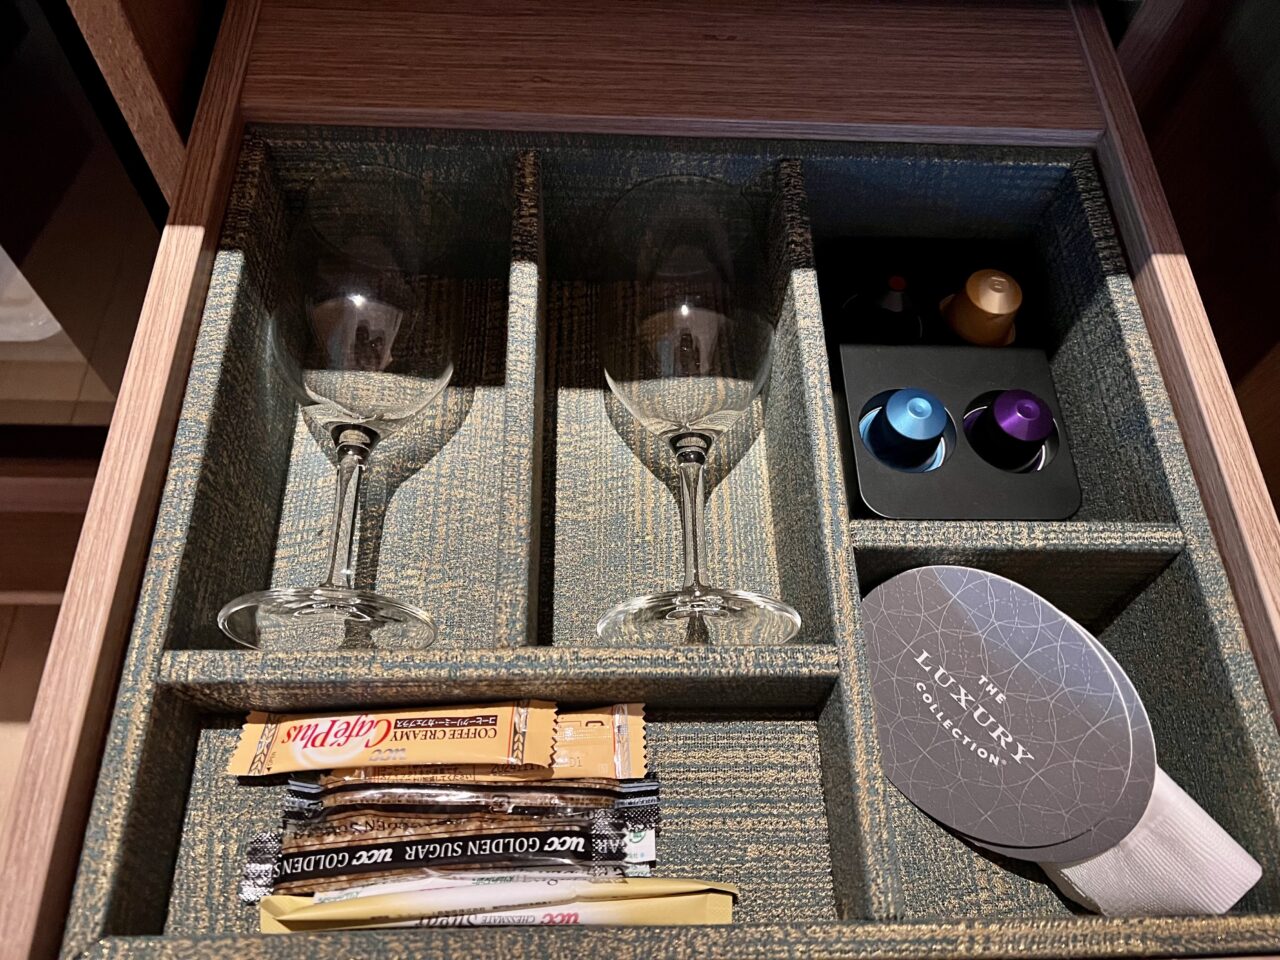 紫翠ラグジュアリーコレクションホテル奈良の客室(デラックスキング・温泉風呂付)の無料ドリンク